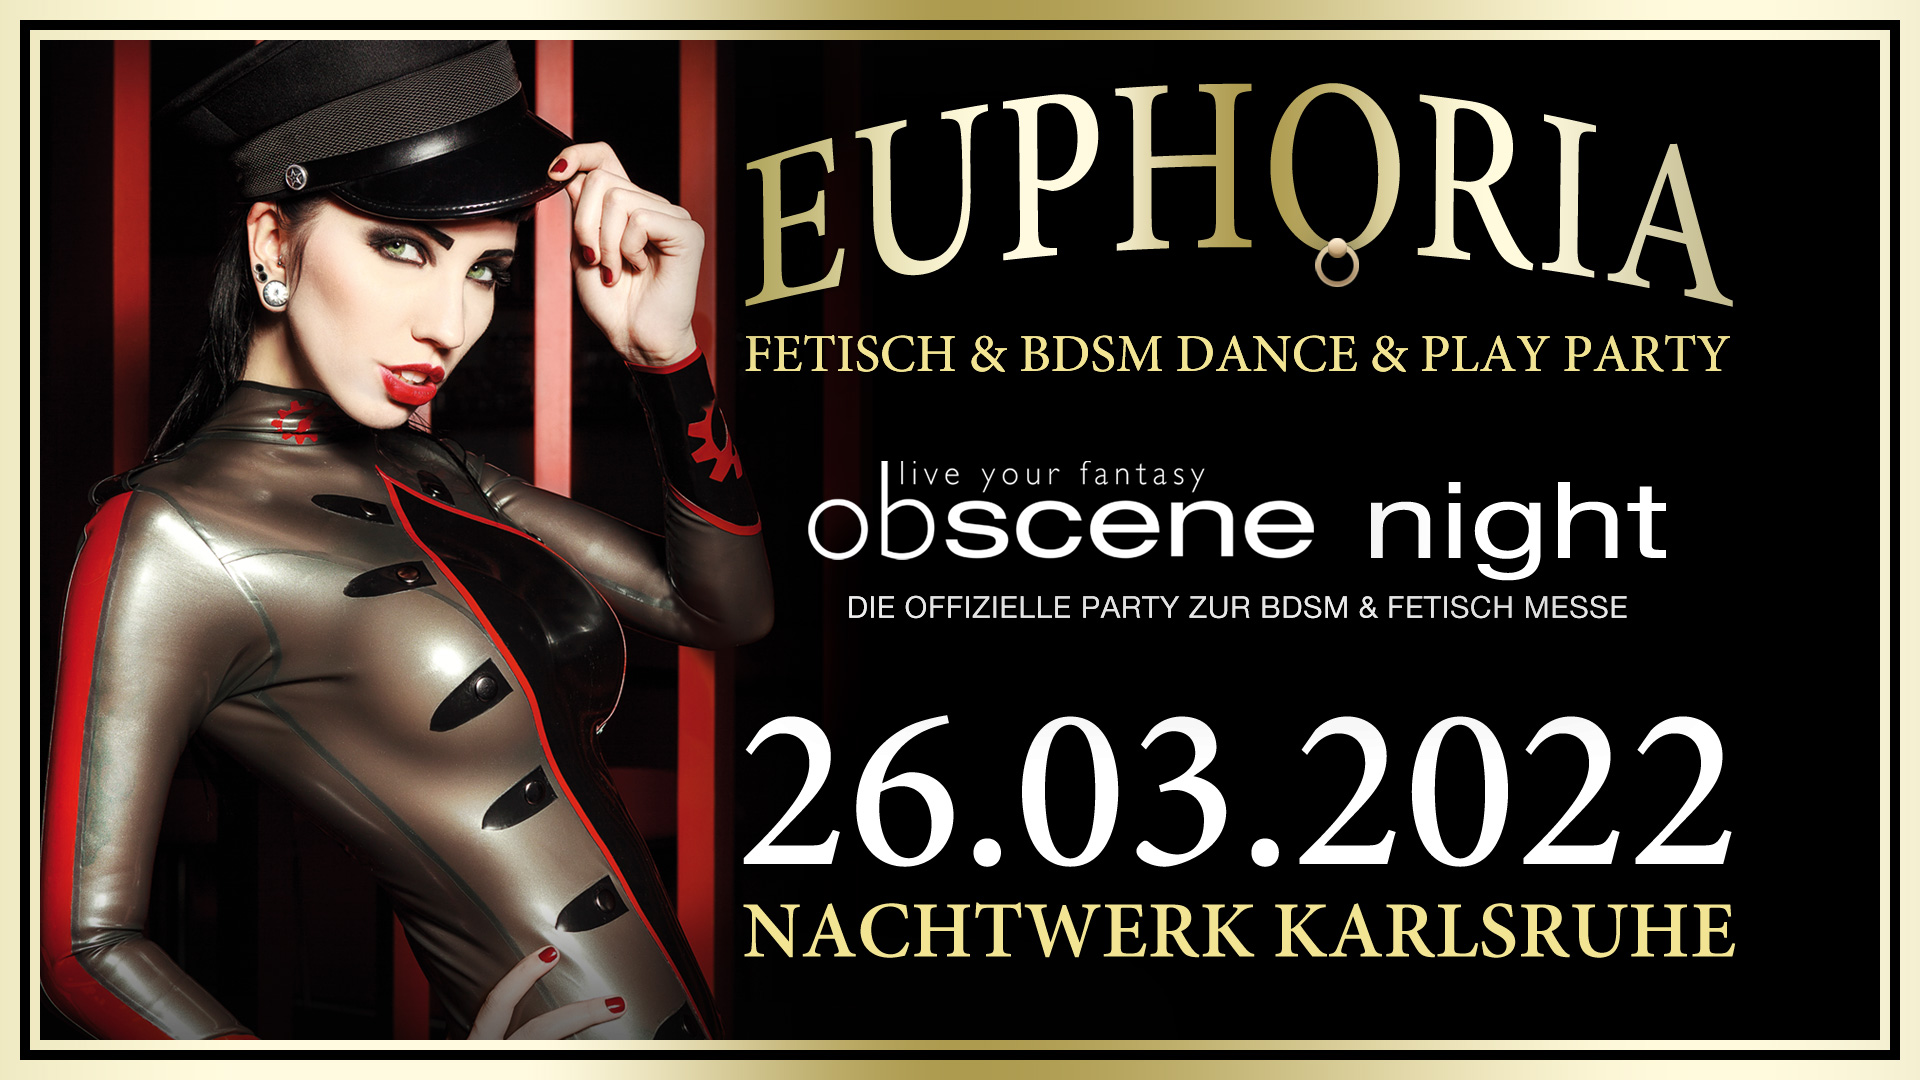 Obscene Night » EUPHORIA: Fetisch und BDSM Dance & Play Party. Die offizielle Aftershowparty der BDSM & Fetisch Messe obscene